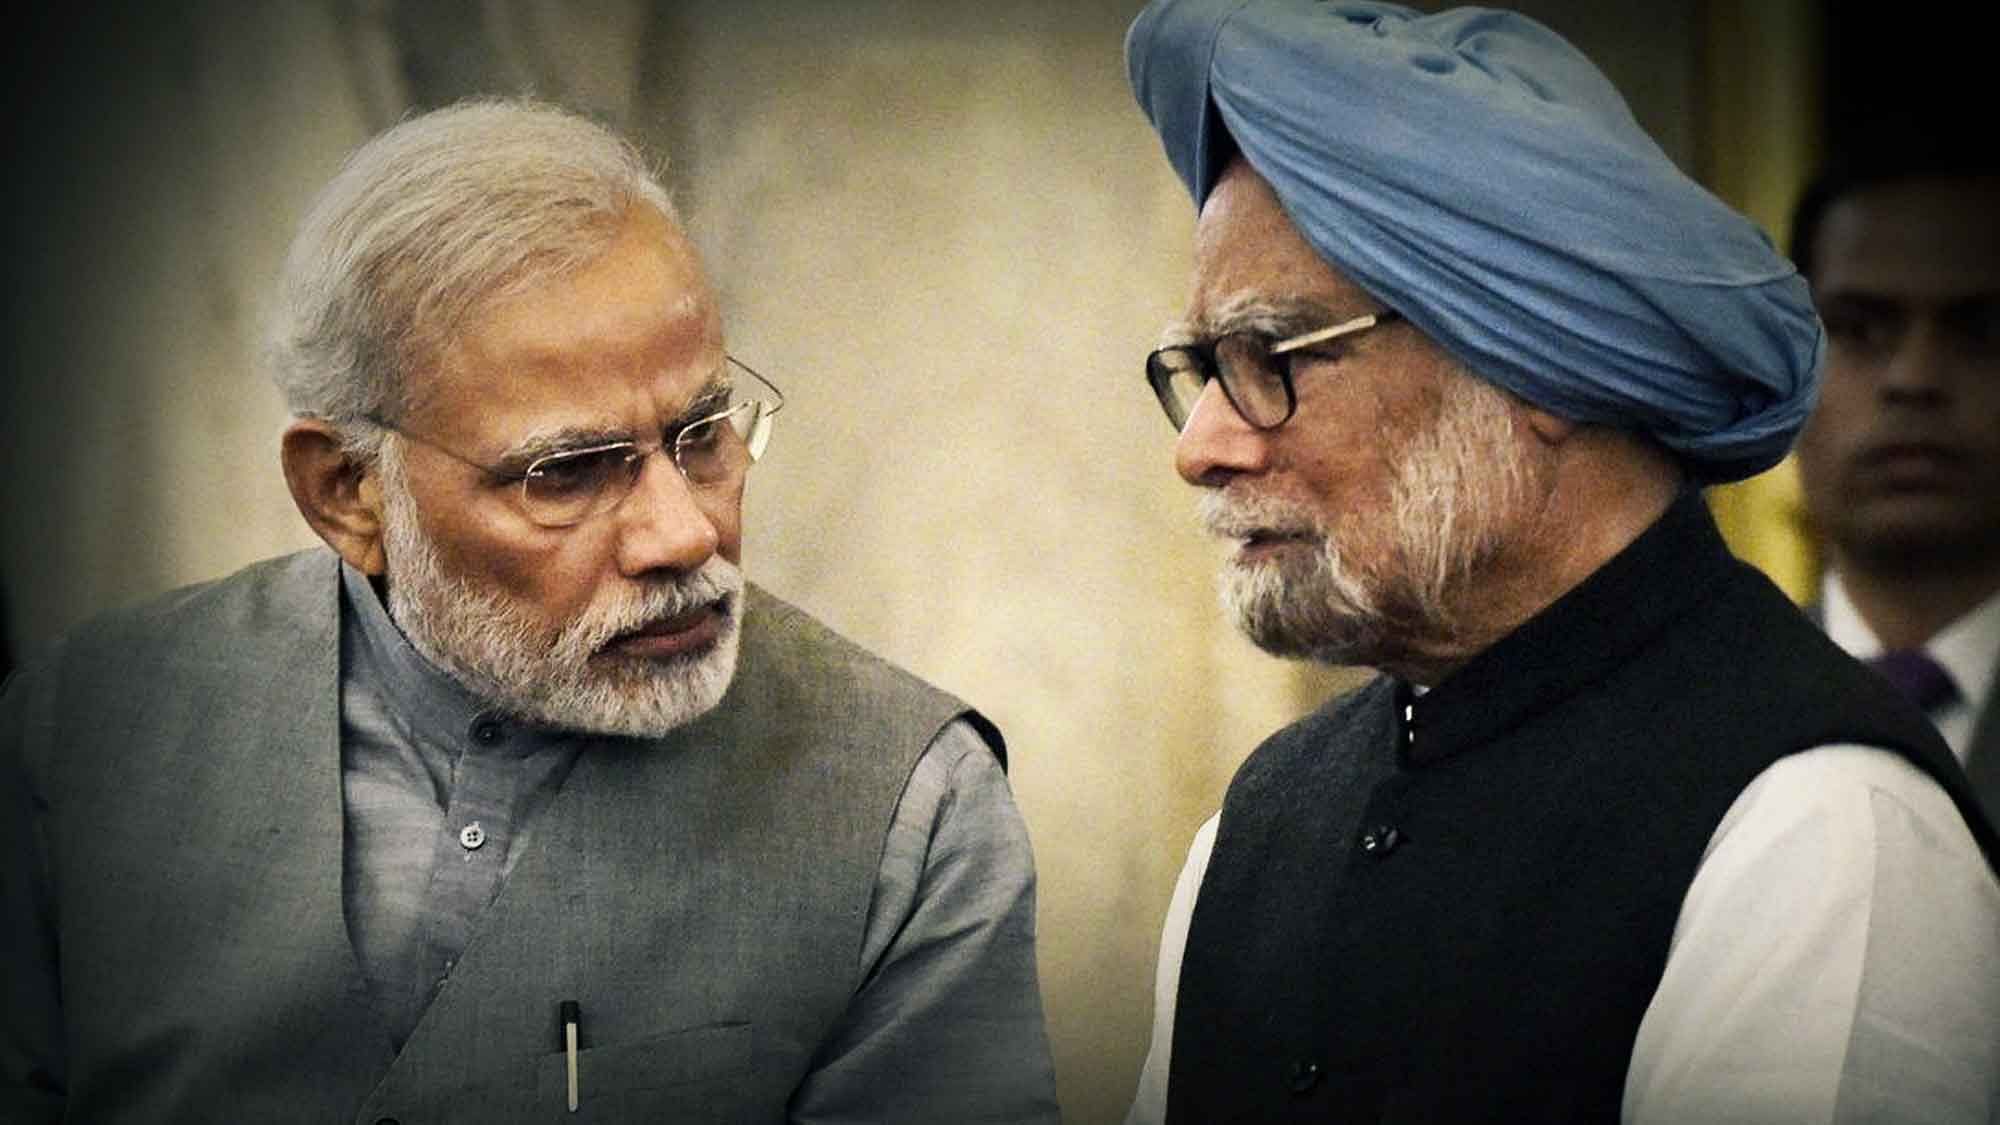 <div class="paragraphs"><p>Narendra Modi and Manmohan Singh.</p></div>